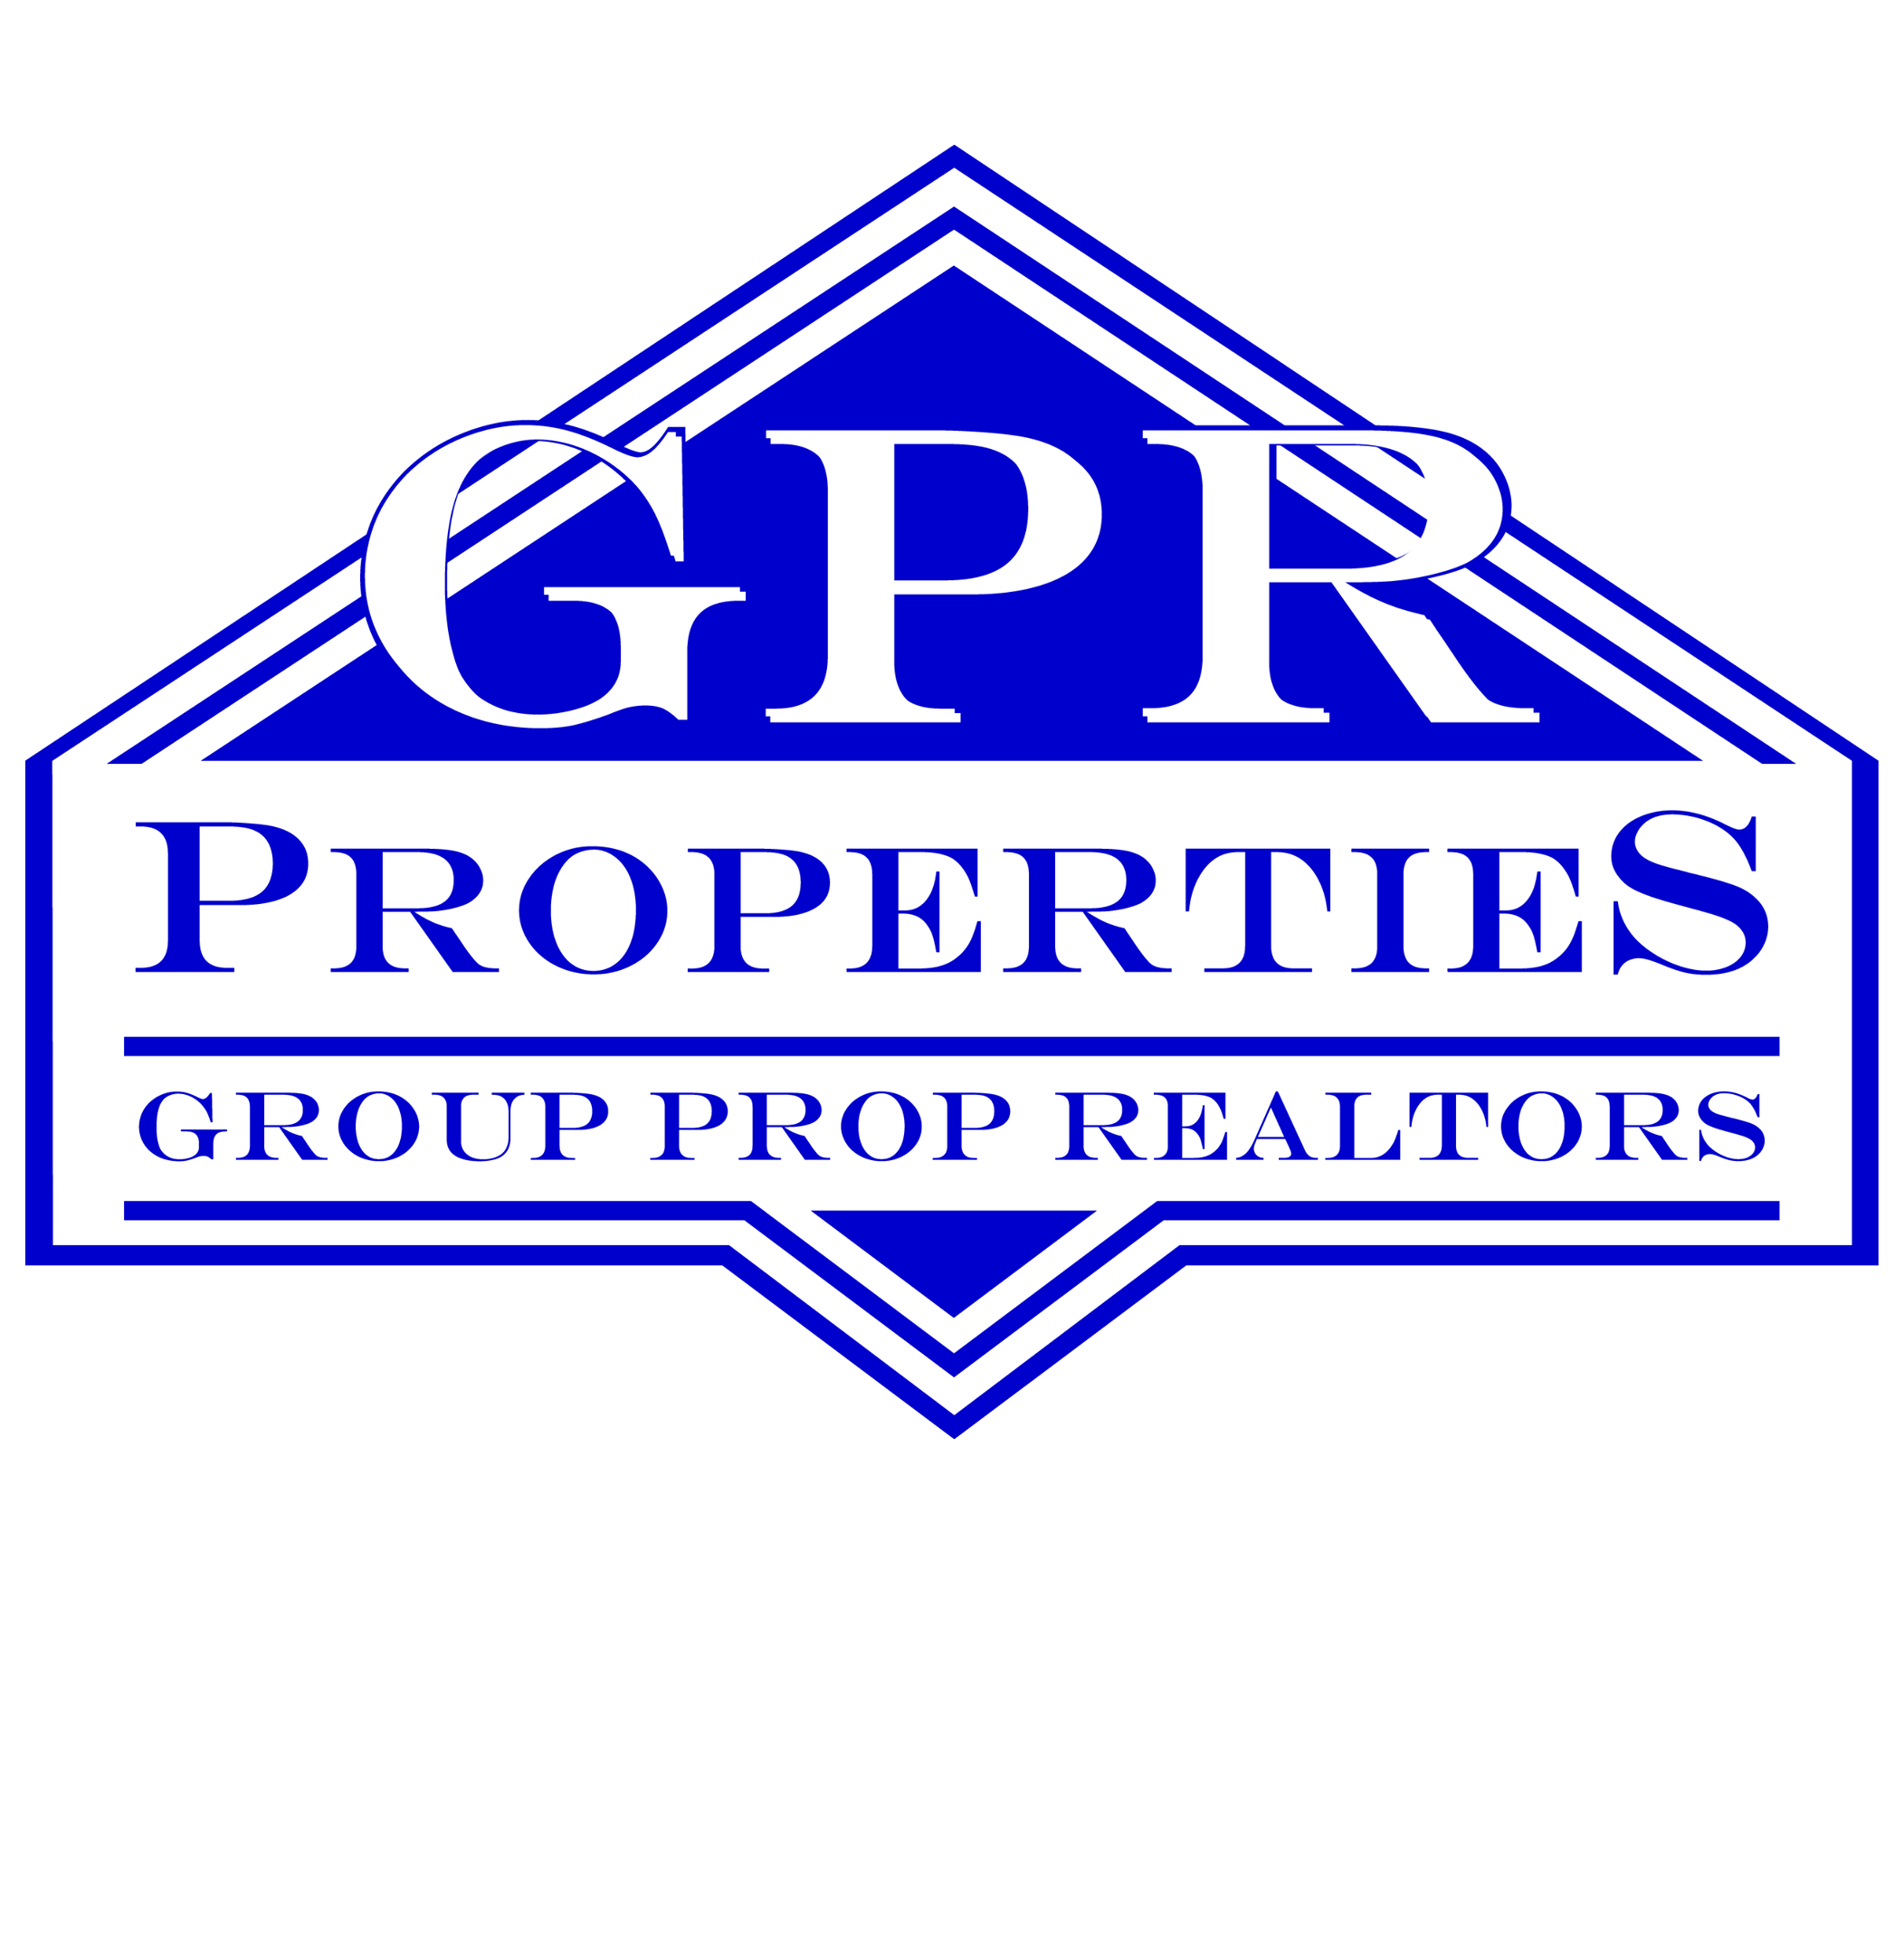 GPR Properties